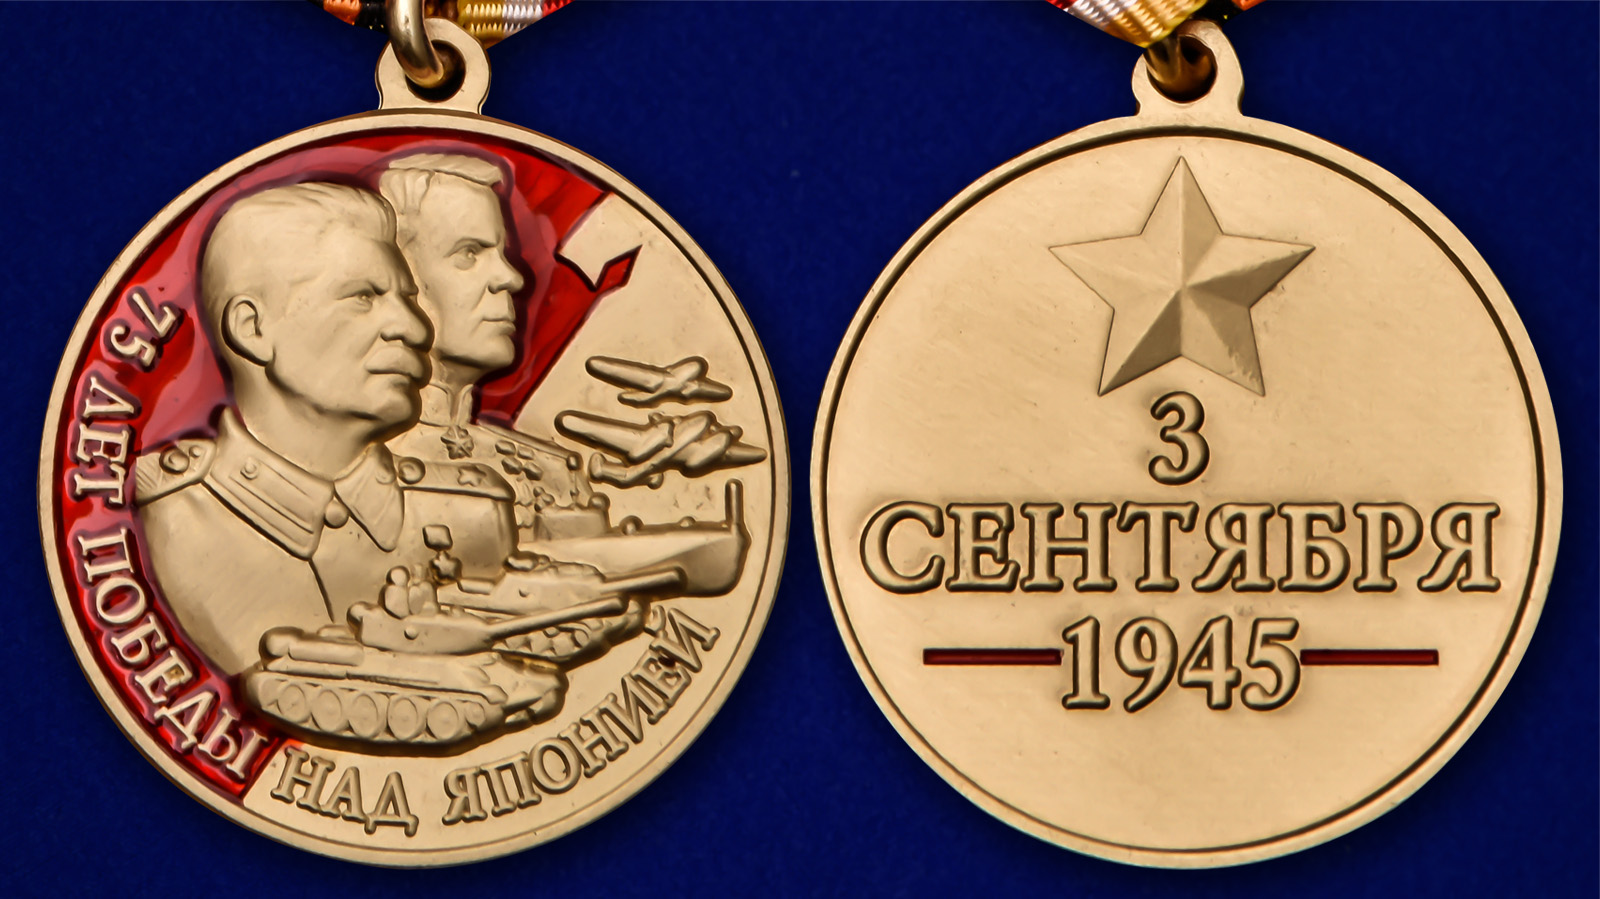 Медаль "75 лет Победы над Японией" с доставкой